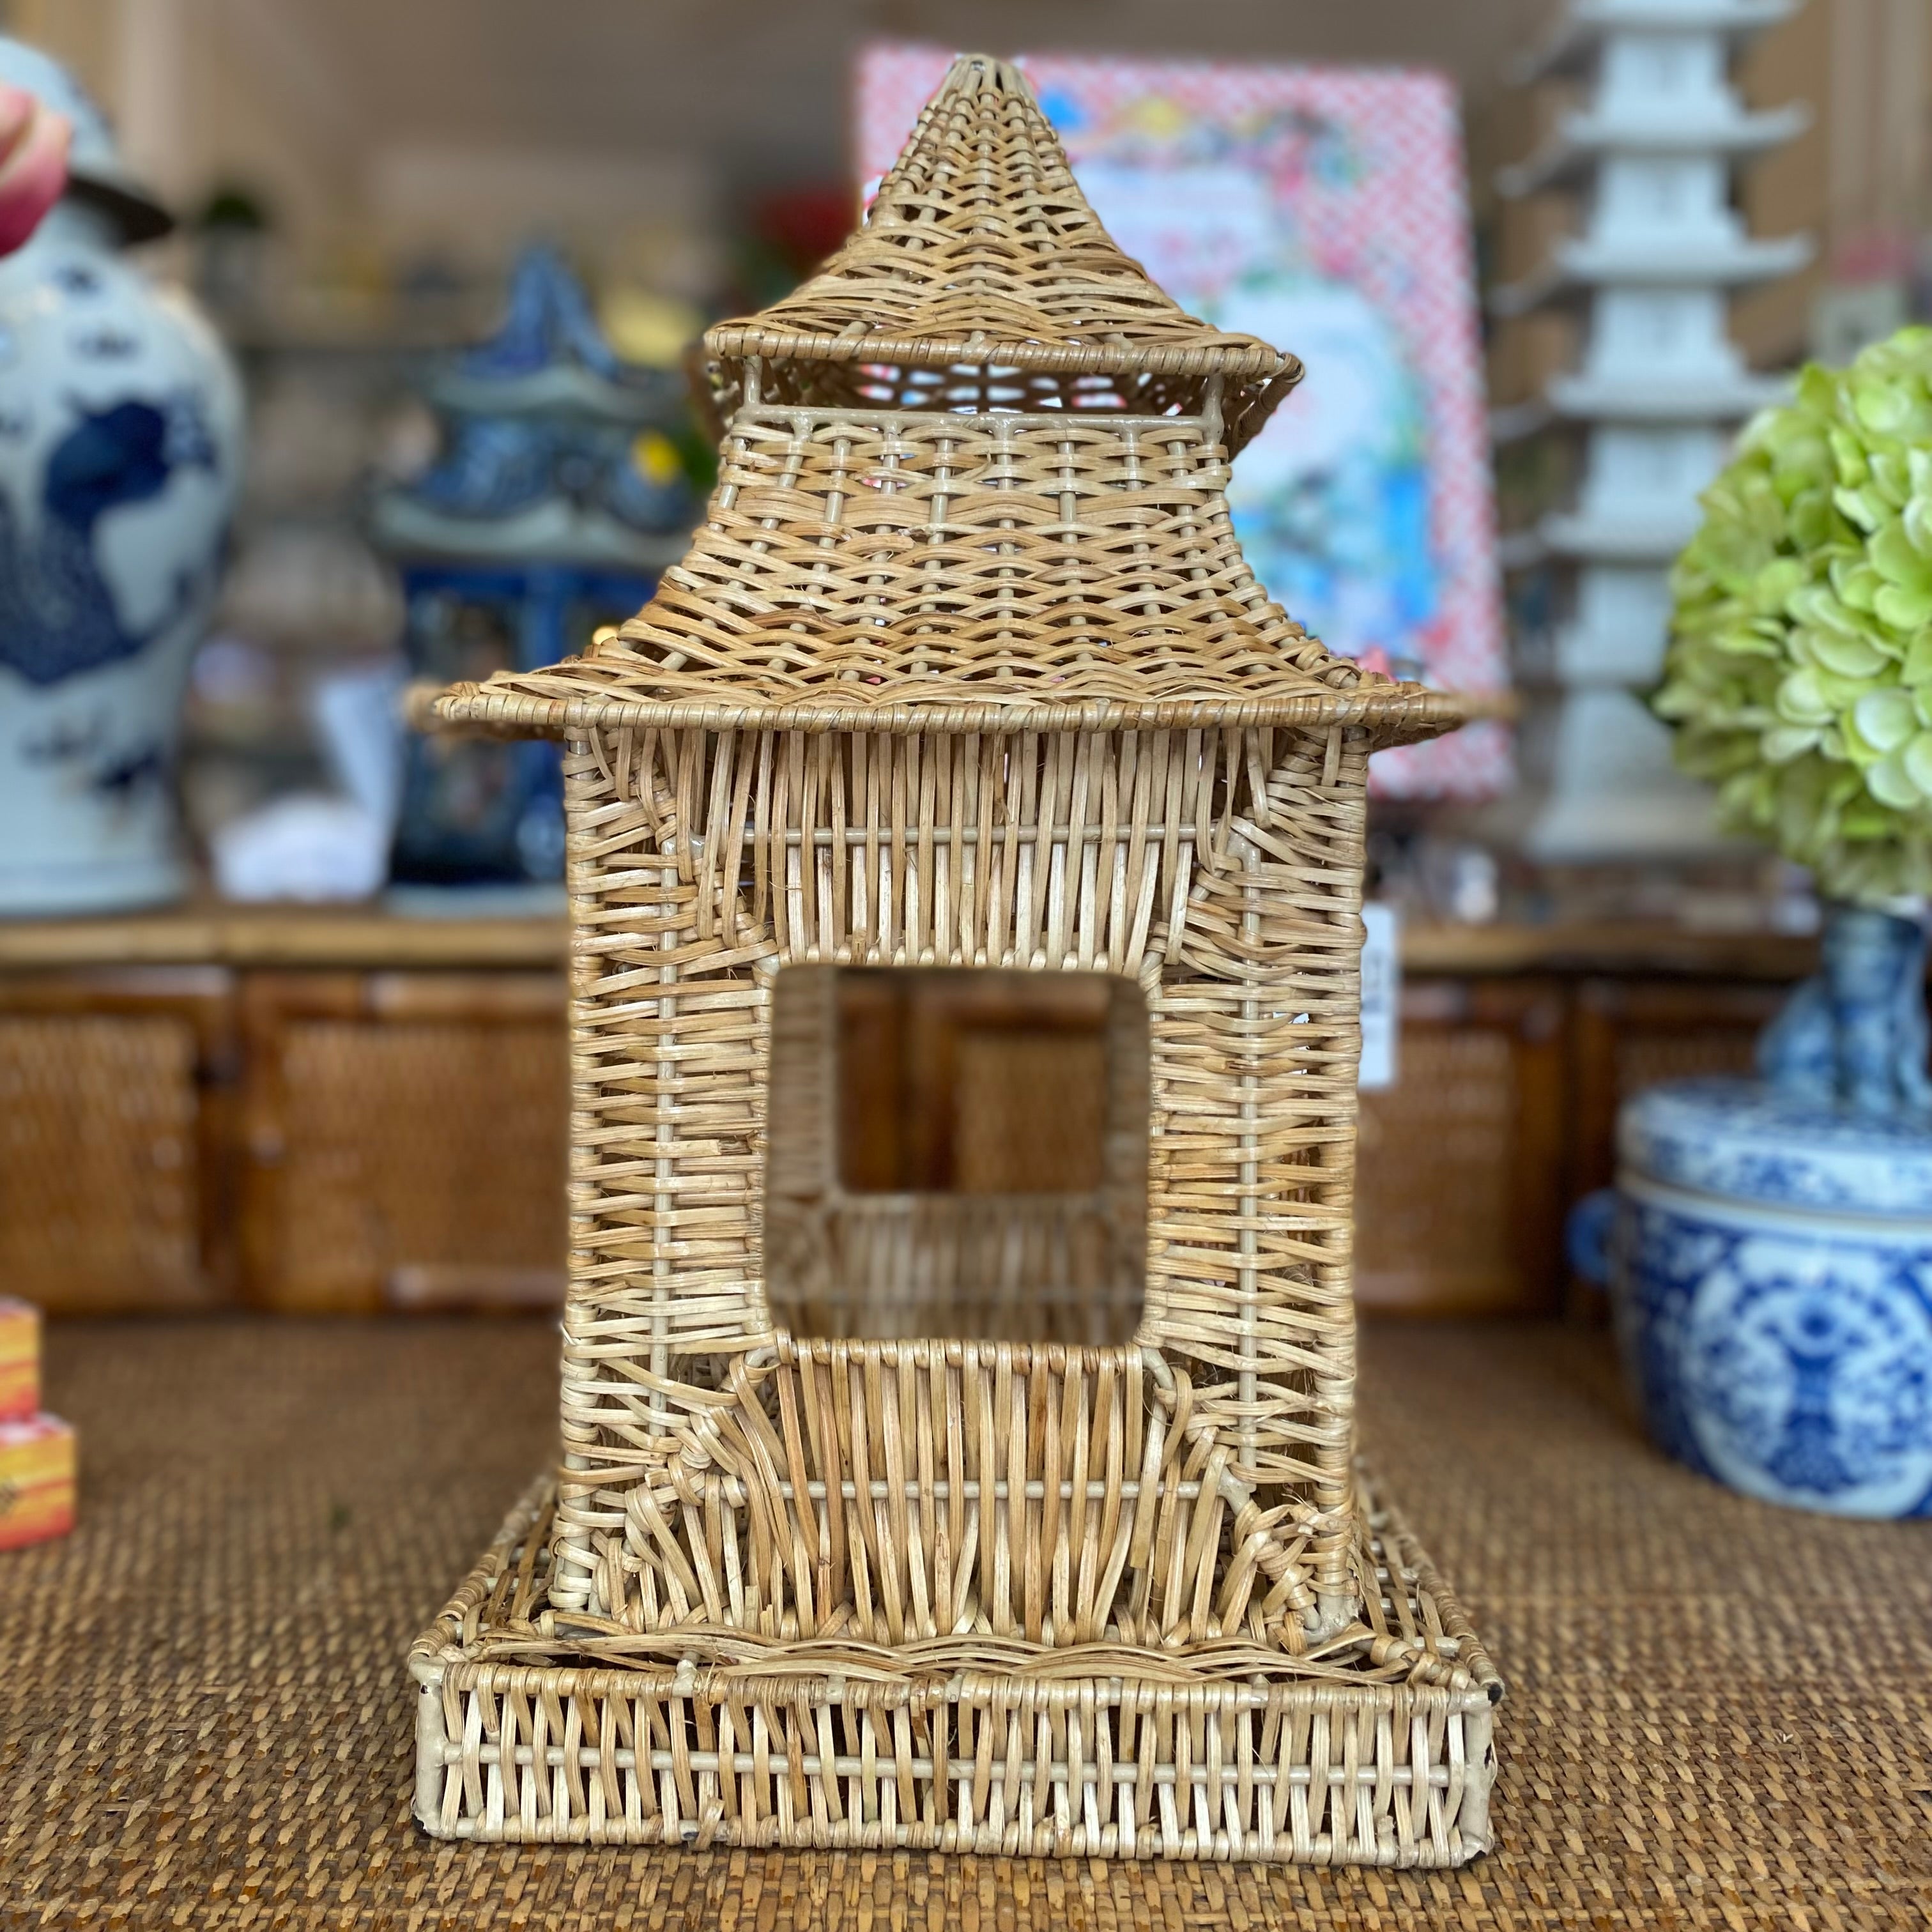 Wicker Pagoda Lantern on Desk